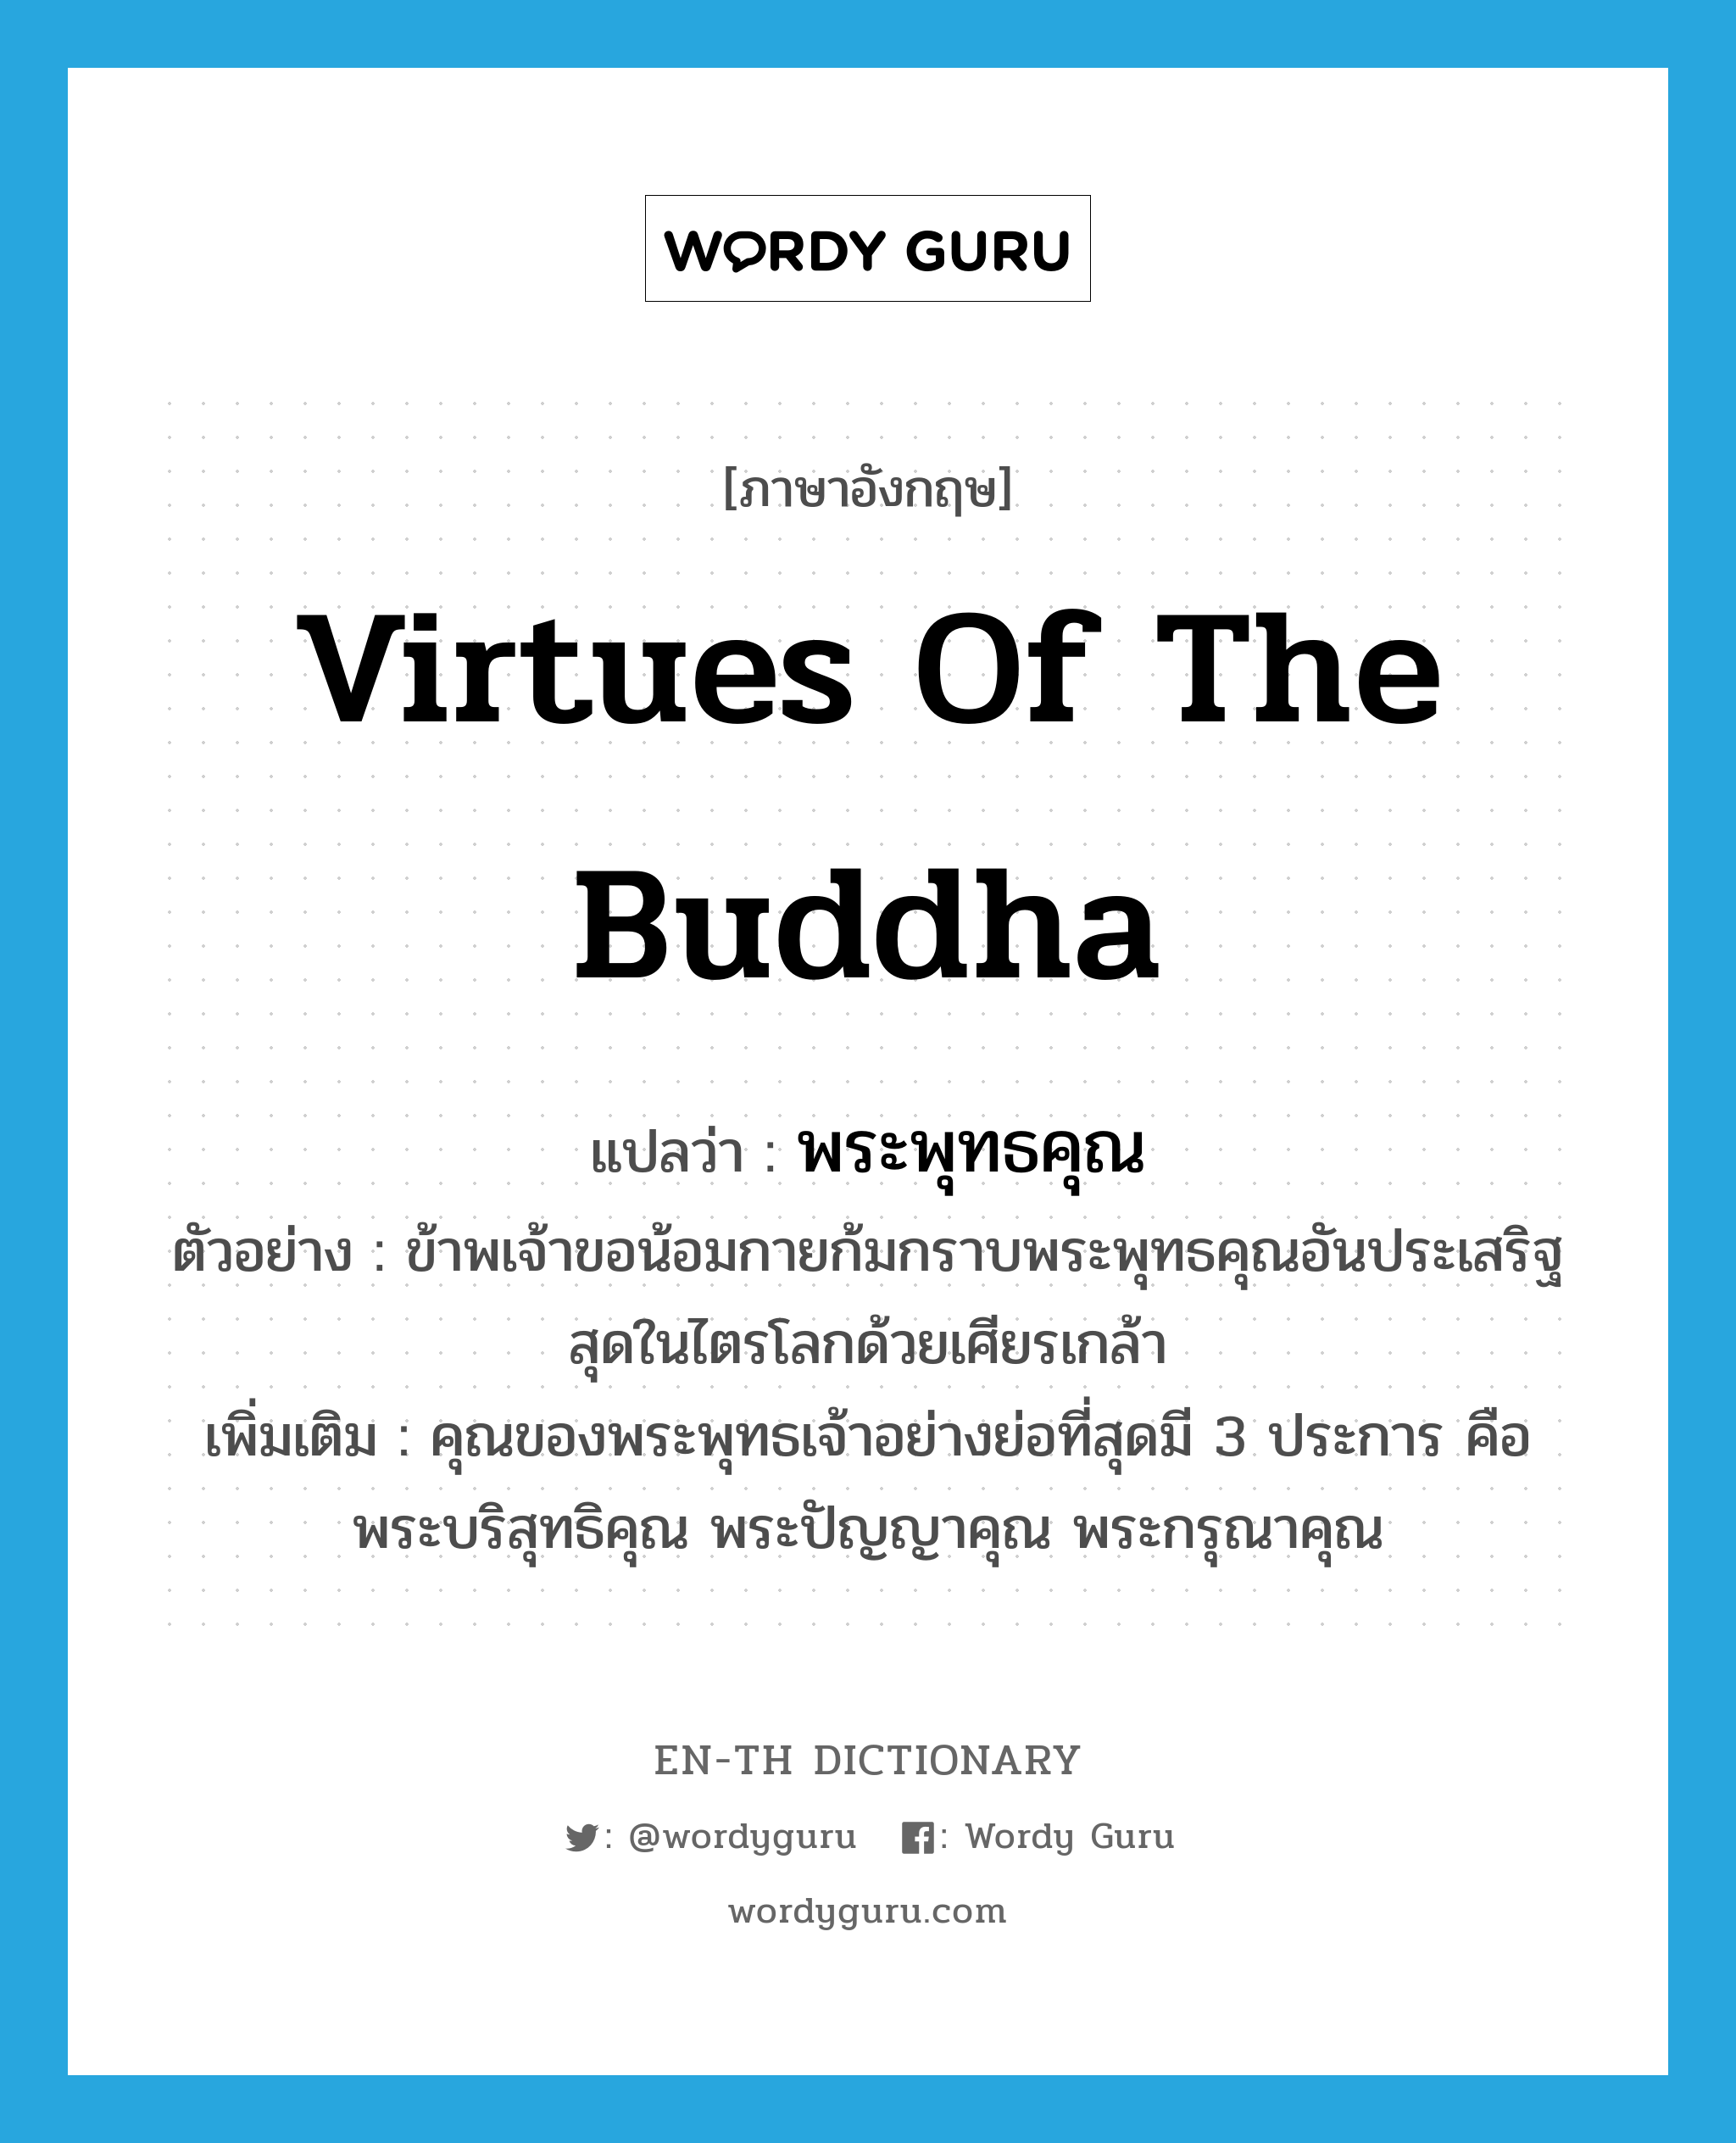 virtues of the Buddha แปลว่า?, คำศัพท์ภาษาอังกฤษ virtues of the Buddha แปลว่า พระพุทธคุณ ประเภท N ตัวอย่าง ข้าพเจ้าขอน้อมกายก้มกราบพระพุทธคุณอันประเสริฐสุดในไตรโลกด้วยเศียรเกล้า เพิ่มเติม คุณของพระพุทธเจ้าอย่างย่อที่สุดมี 3 ประการ คือ พระบริสุทธิคุณ พระปัญญาคุณ พระกรุณาคุณ หมวด N